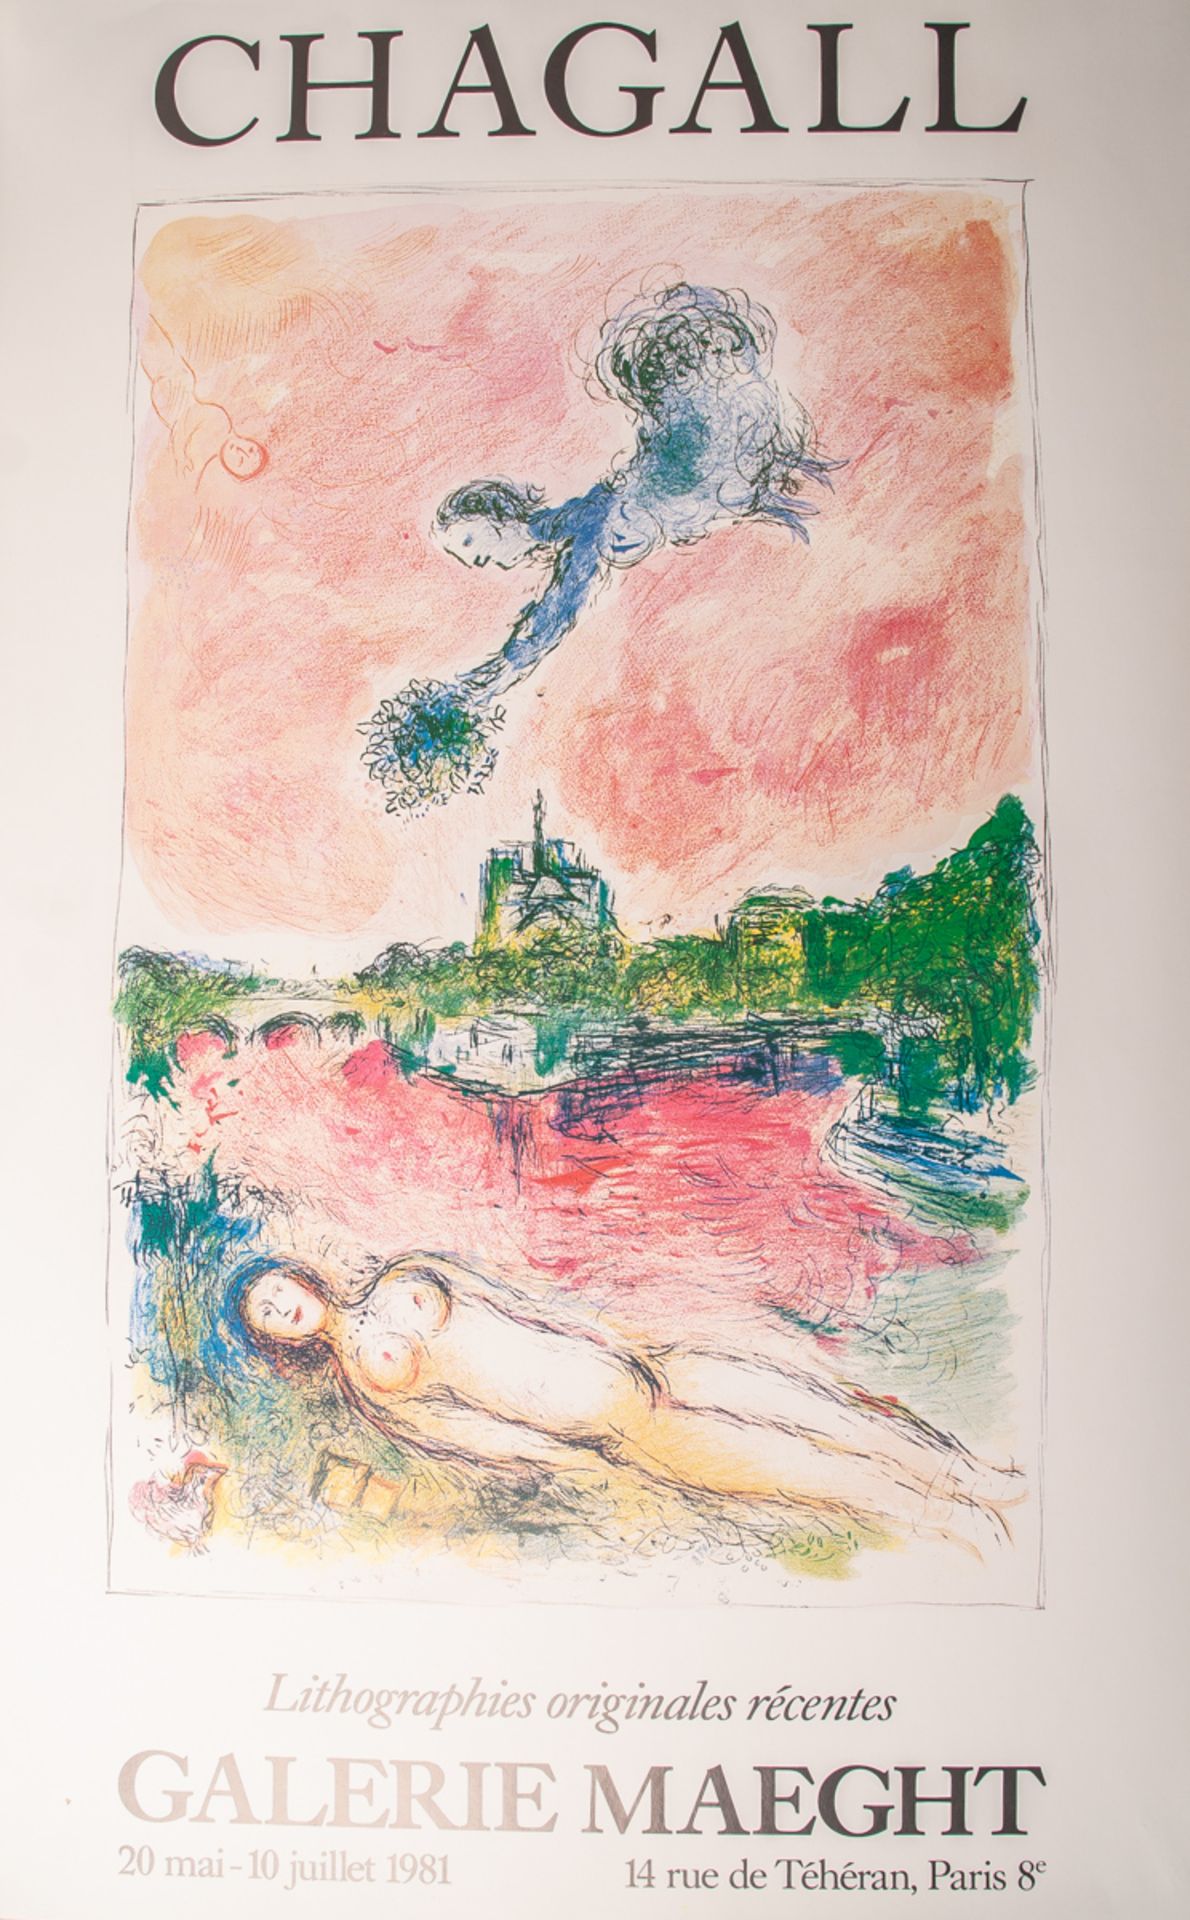 Chagall, Marc (1887 - 1985), Ausstellungsplakat für Chagall-Ausstellung in der GalerieMaeght in